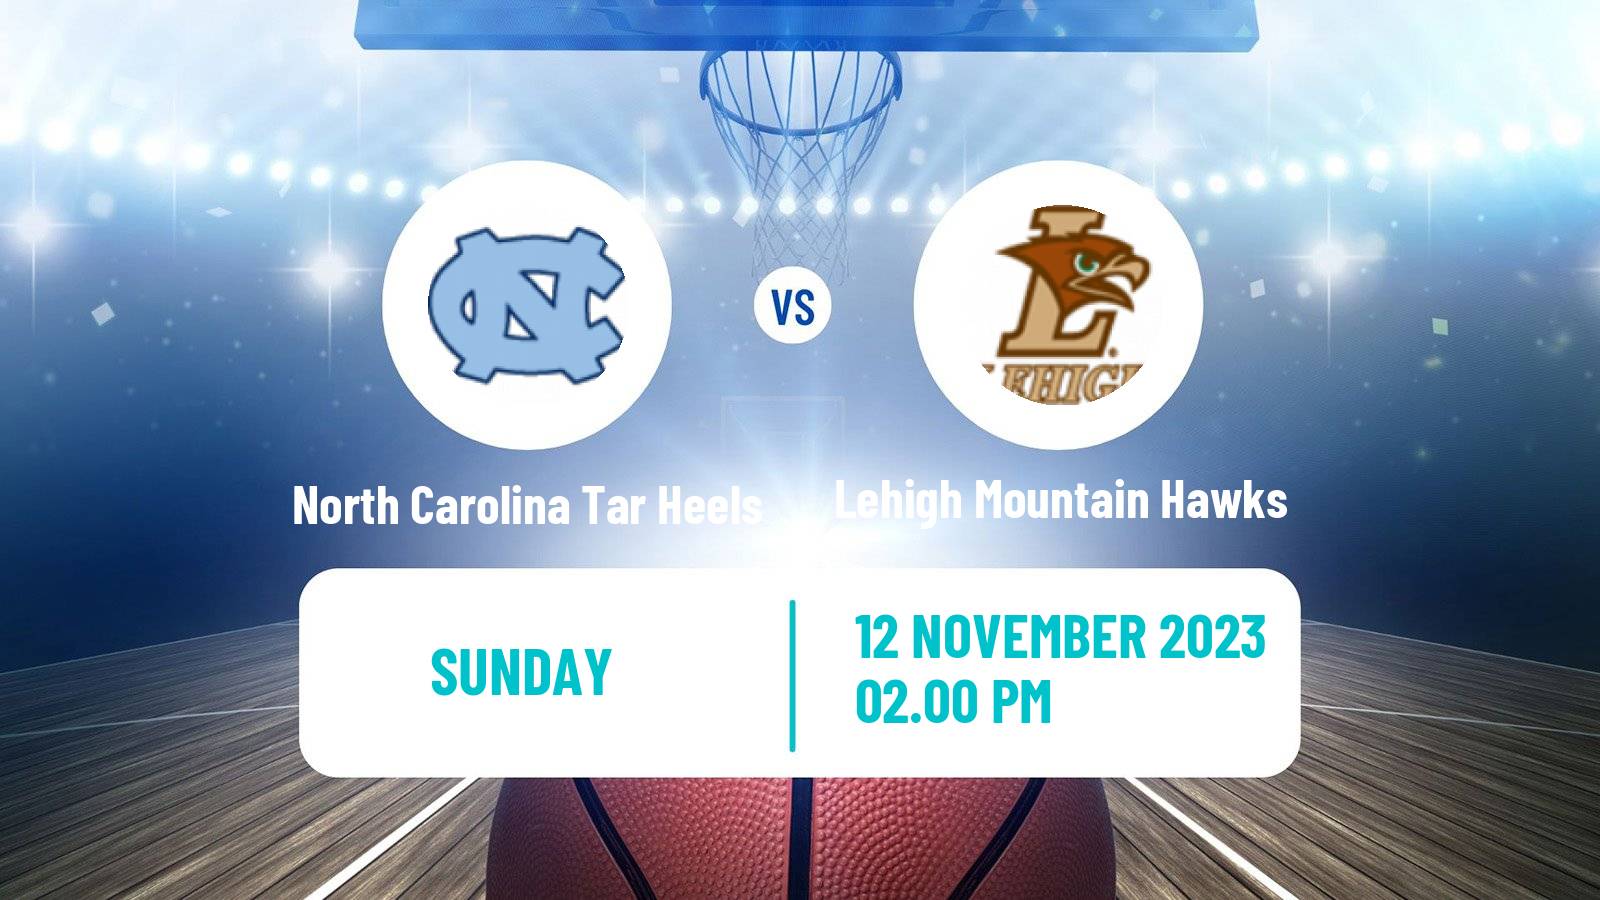 Basketball NCAA College Basketball North Carolina Tar Heels - Lehigh Mountain Hawks